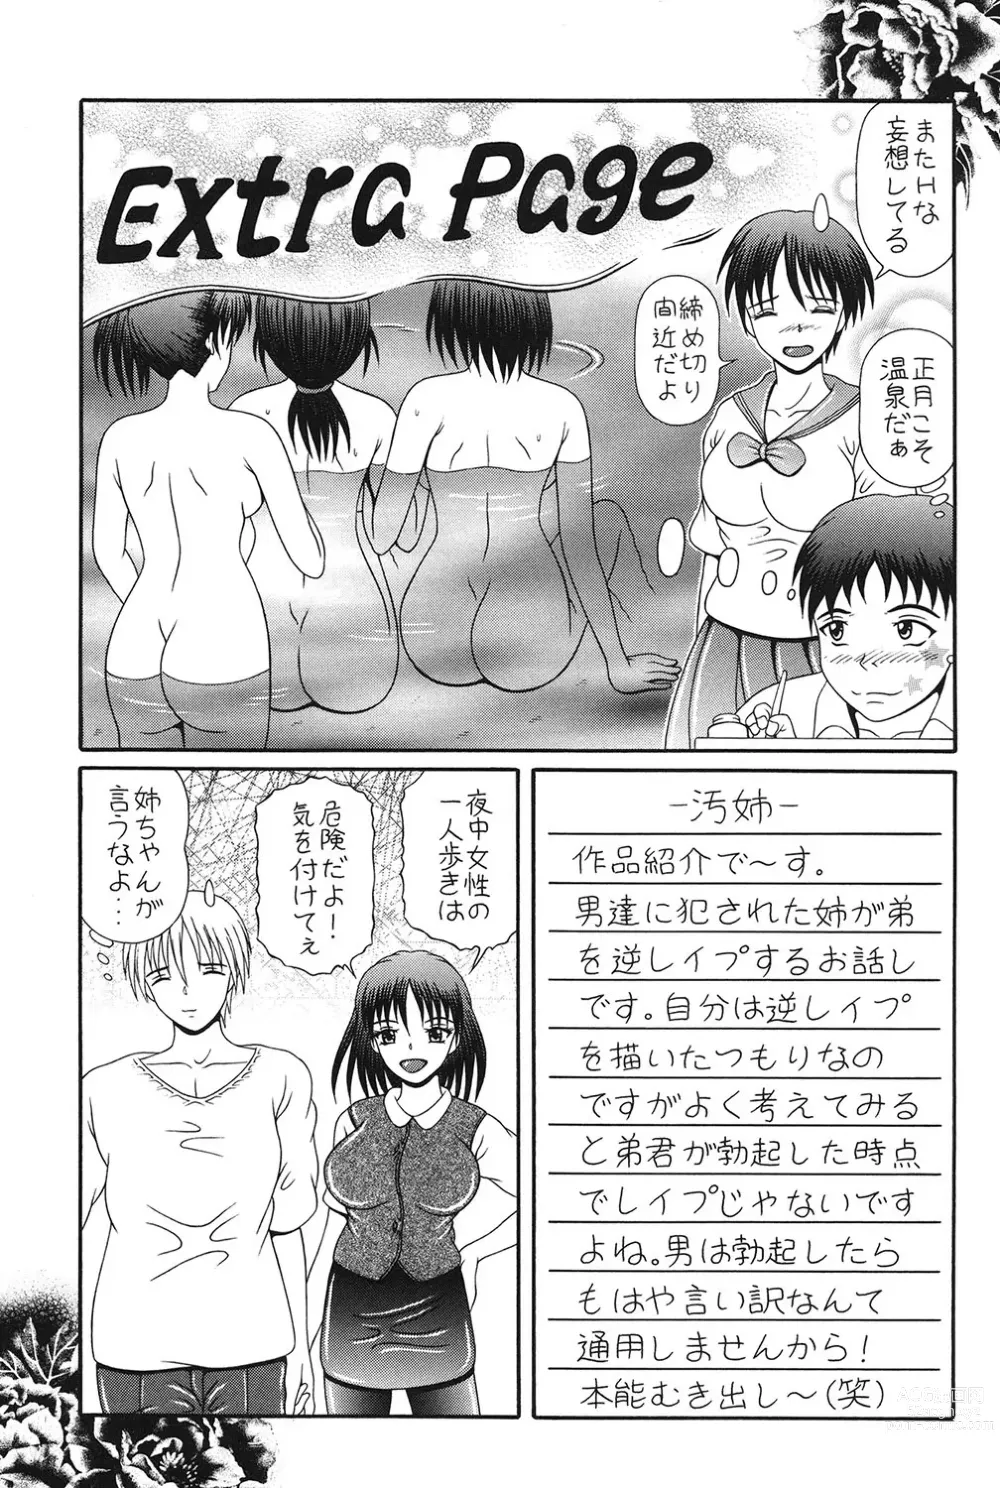 Page 144 of manga Todokanai Zekkyou - Nicht Erreichen Schreien